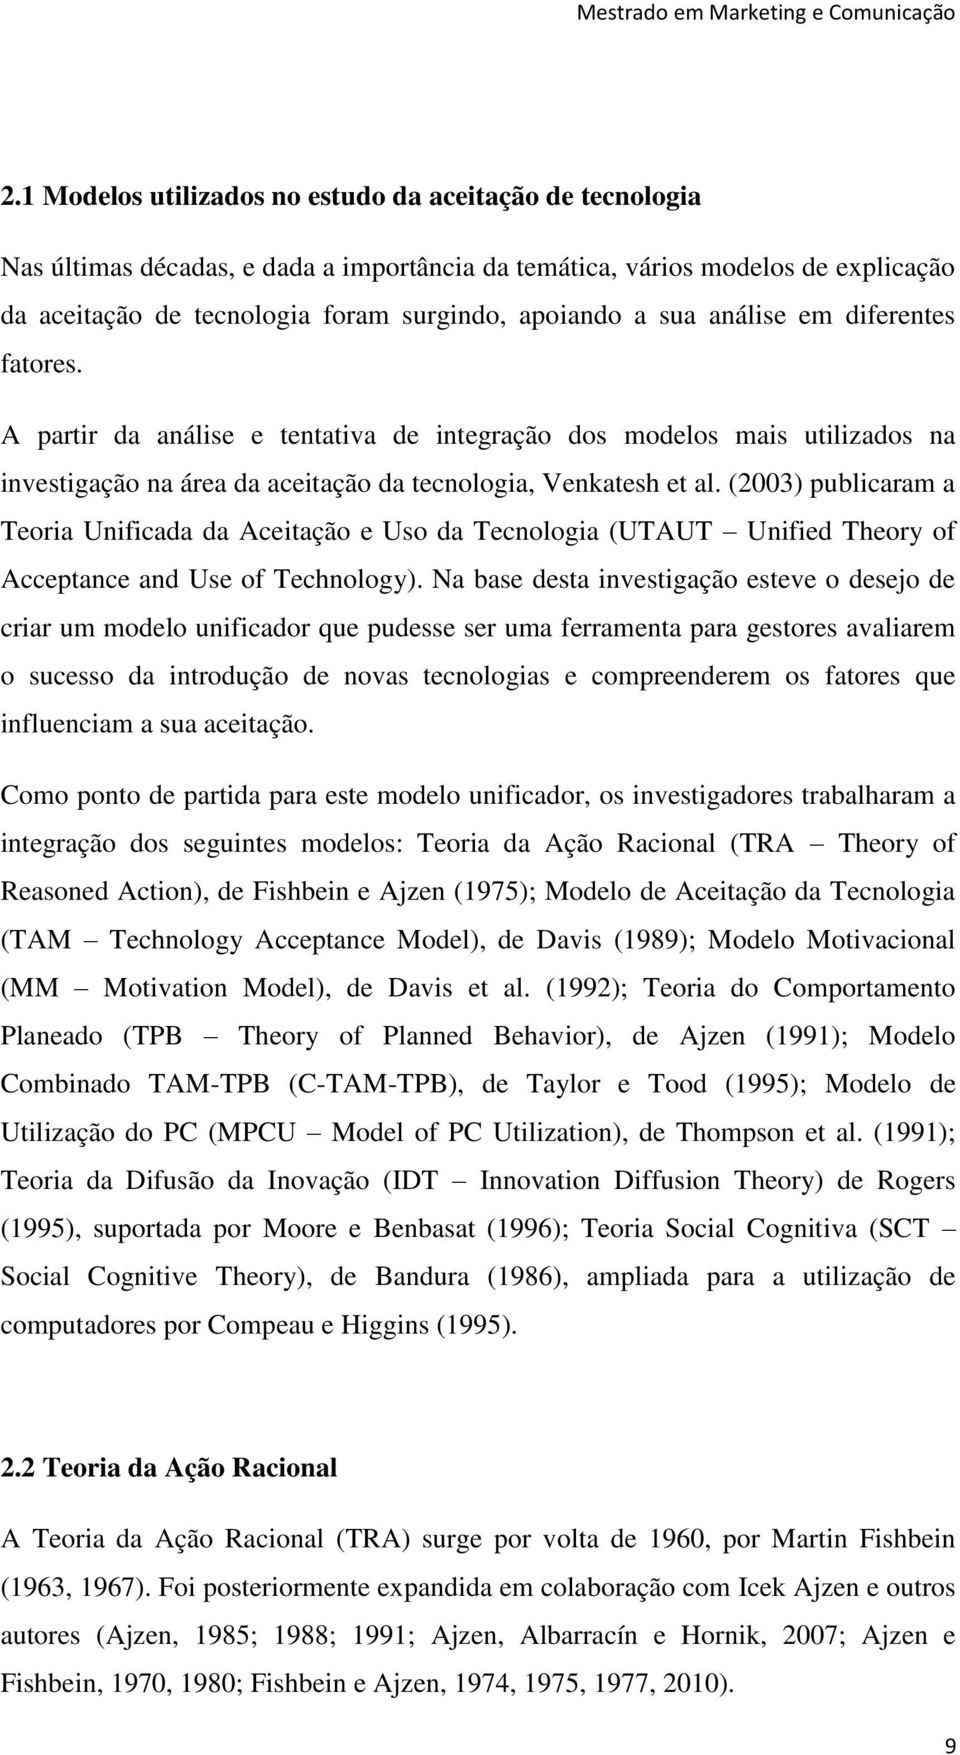 análise em diferentes fatores. A partir da análise e tentativa de integração dos modelos mais utilizados na investigação na área da aceitação da tecnologia, Venkatesh et al.